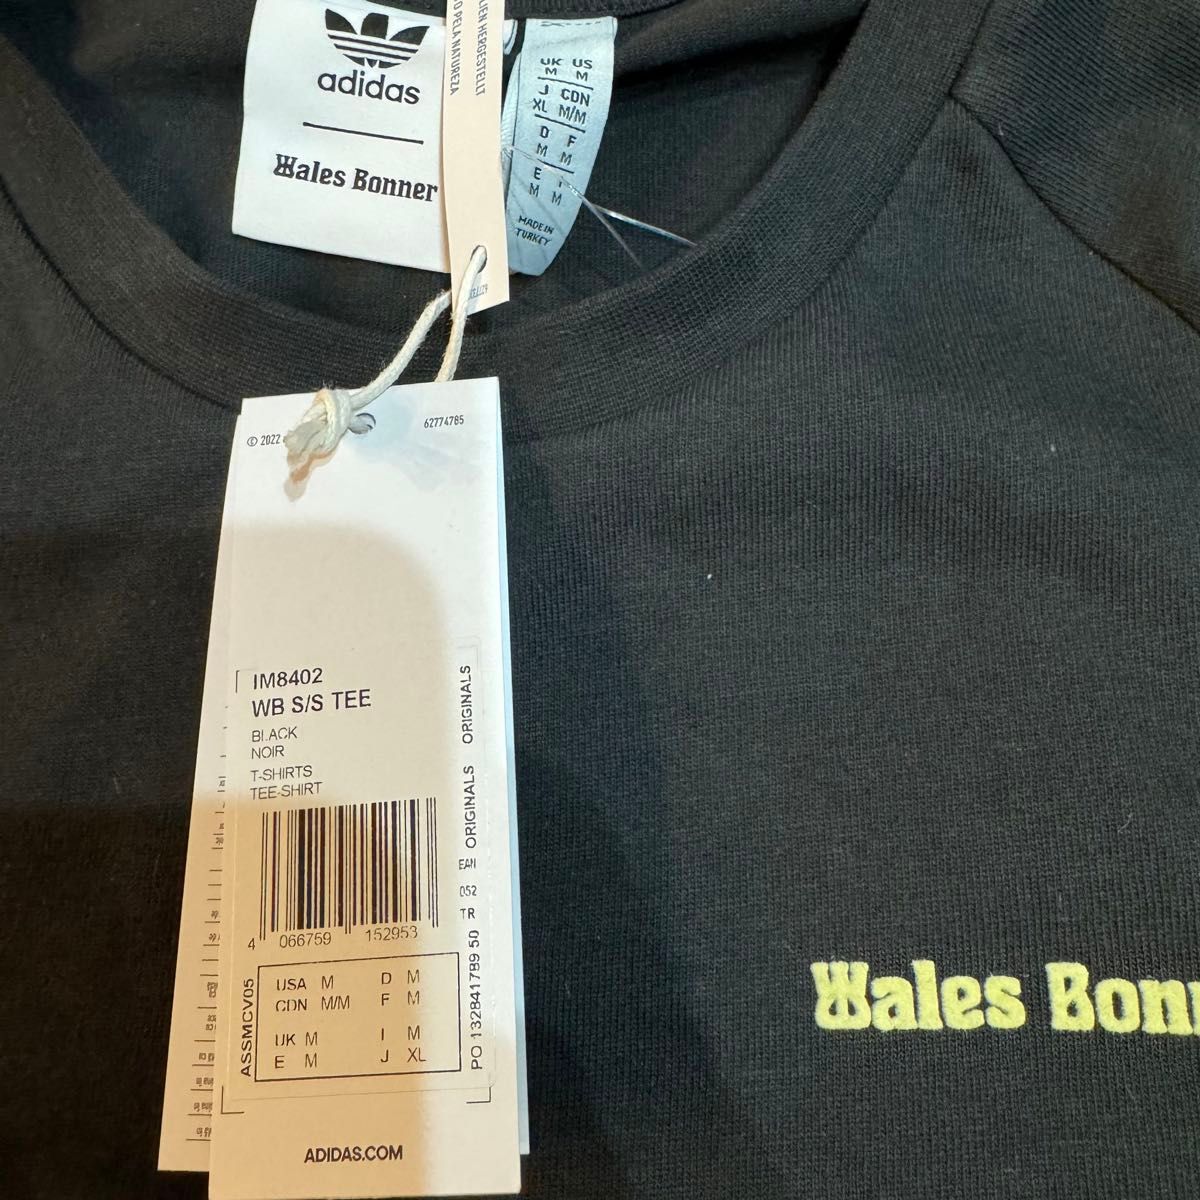 【レア・希少】ウェールズ ボナー アディダス　Tシャツ　コラボ adidas WALES BONNER  XL